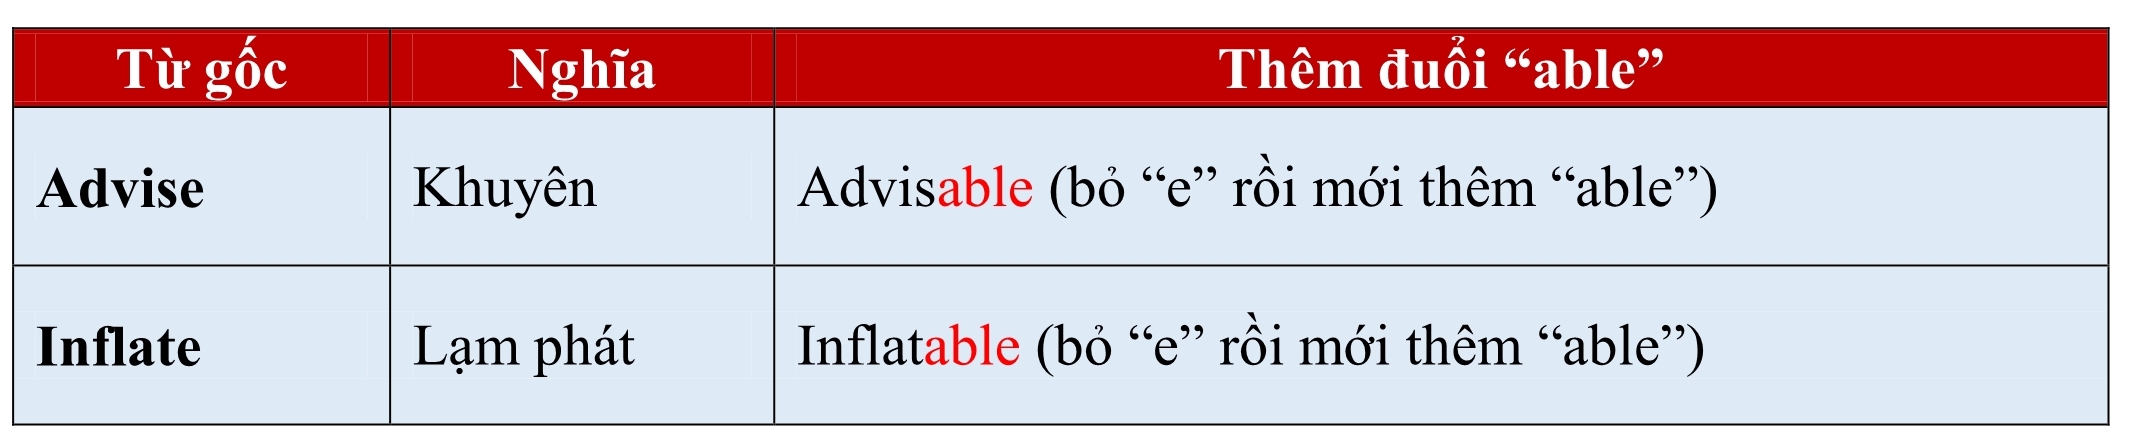 able va ible 2 - Phân biệt cách sử dụng hai hậu tố “ABLE” và “IBLE”